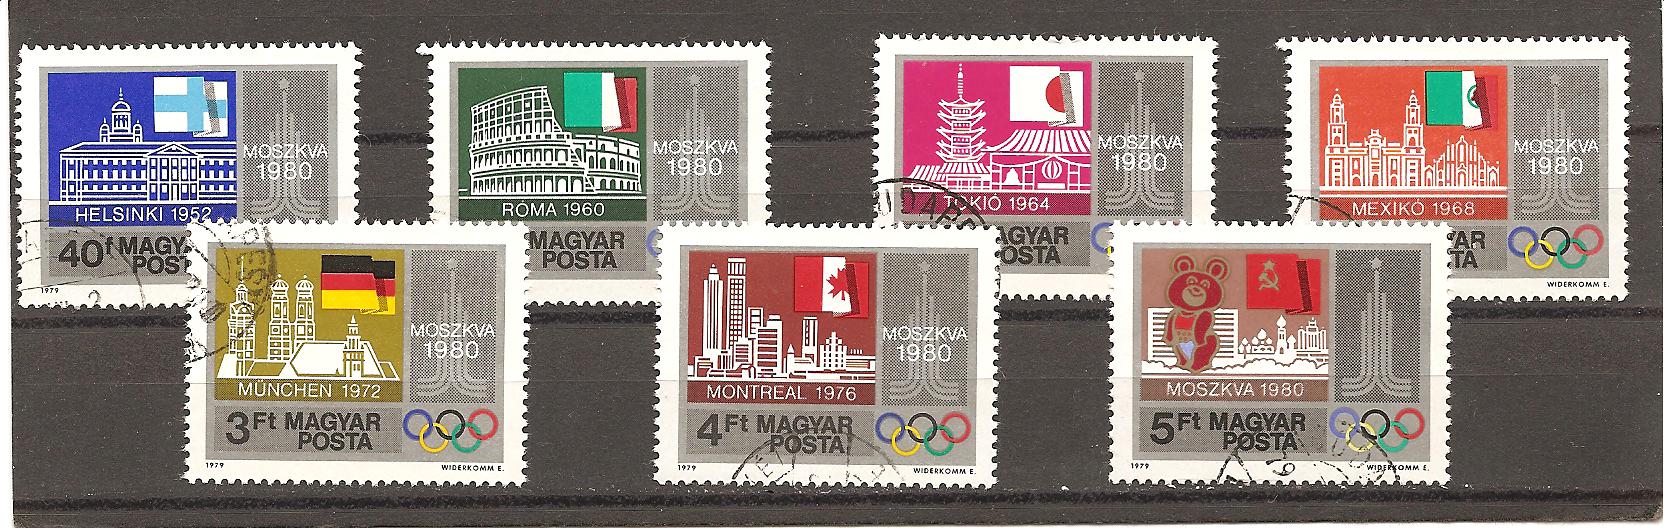 22538 - Ungheria - serie completa usata: Olimpiadi di Mosca 1980